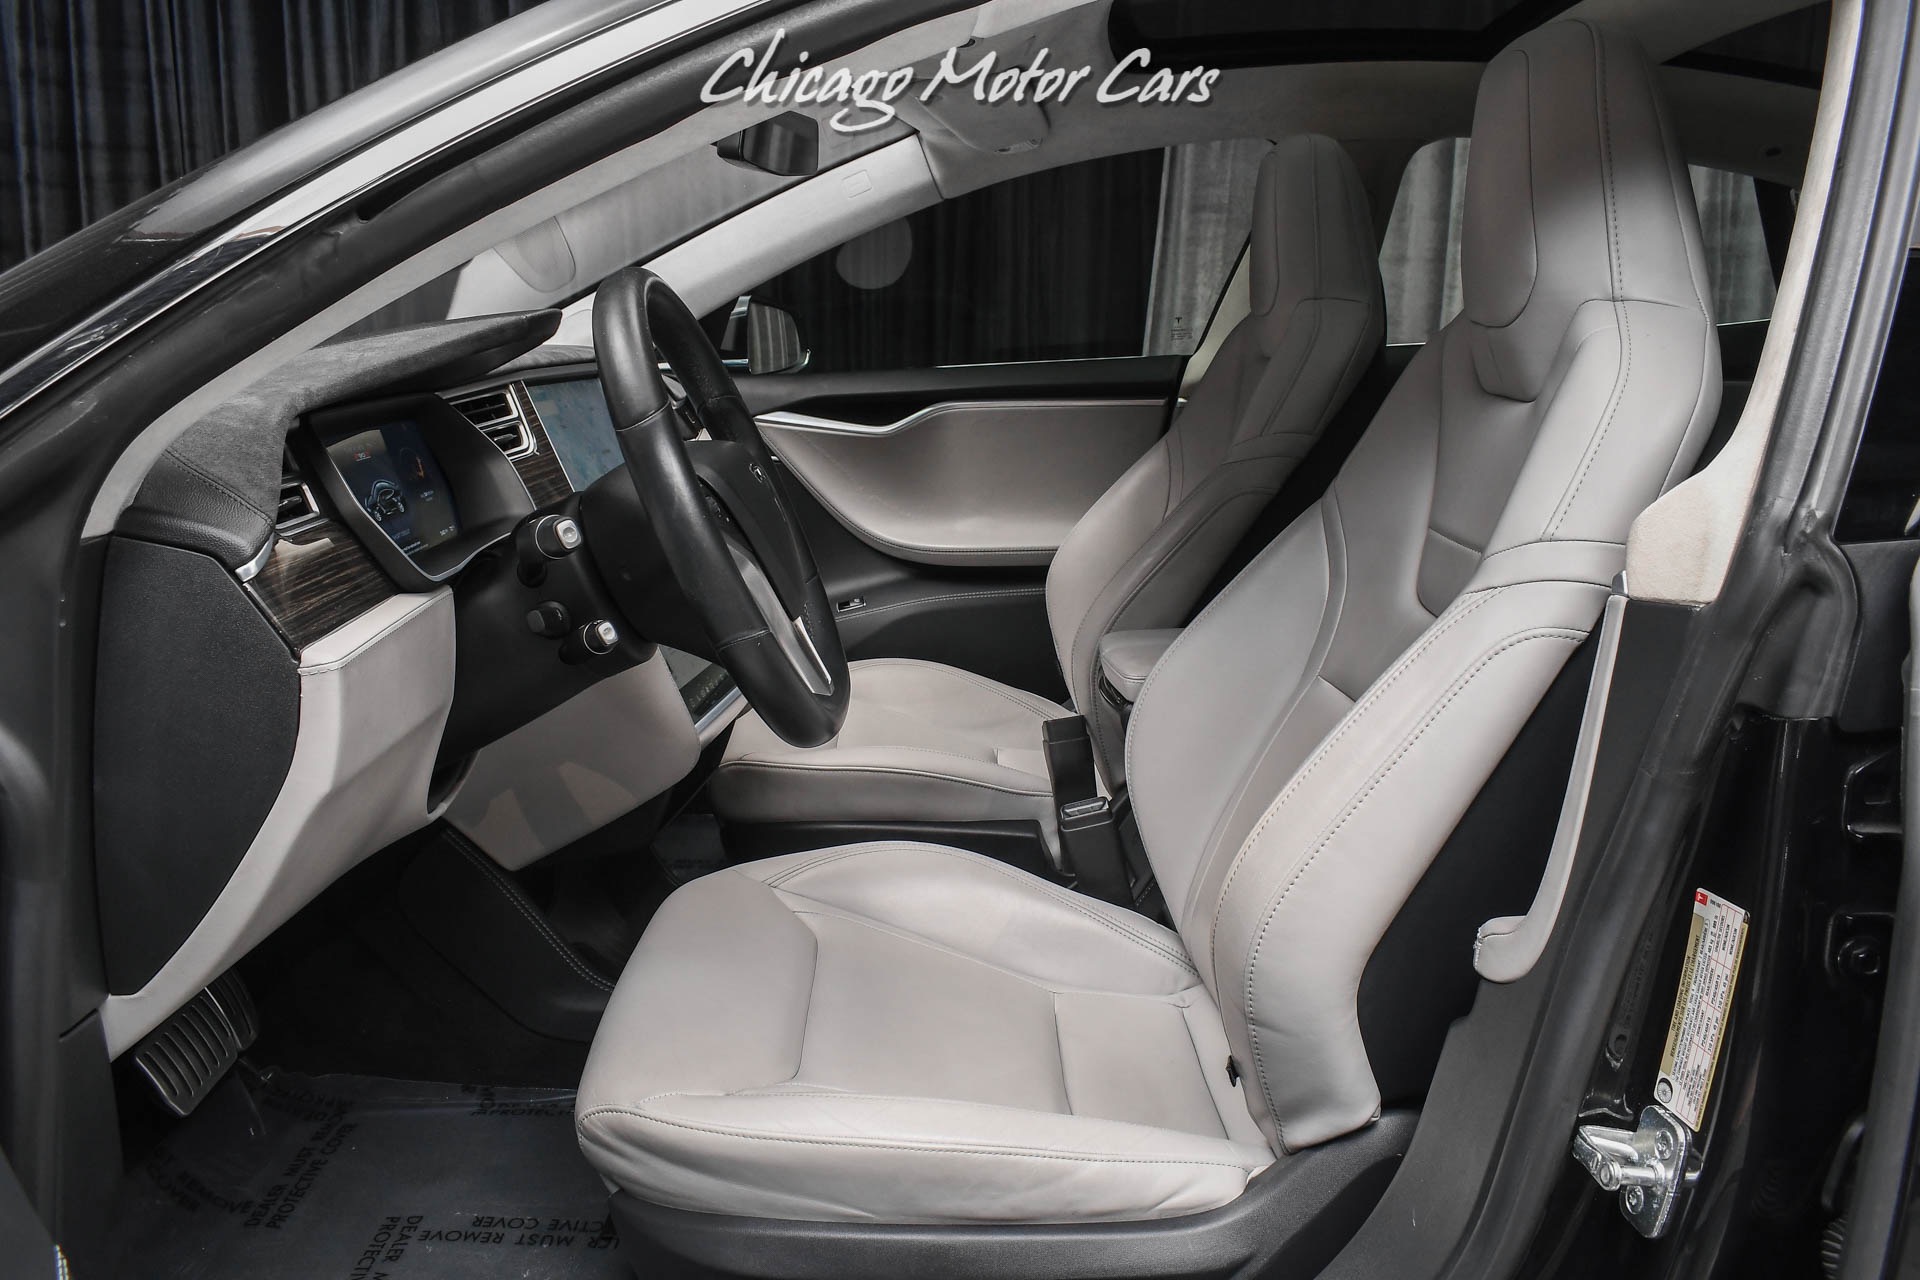 Used-2015-Tesla-Model-S-P90D-Premium-Upgrades-Package-Autopilot-Convenience-Feature